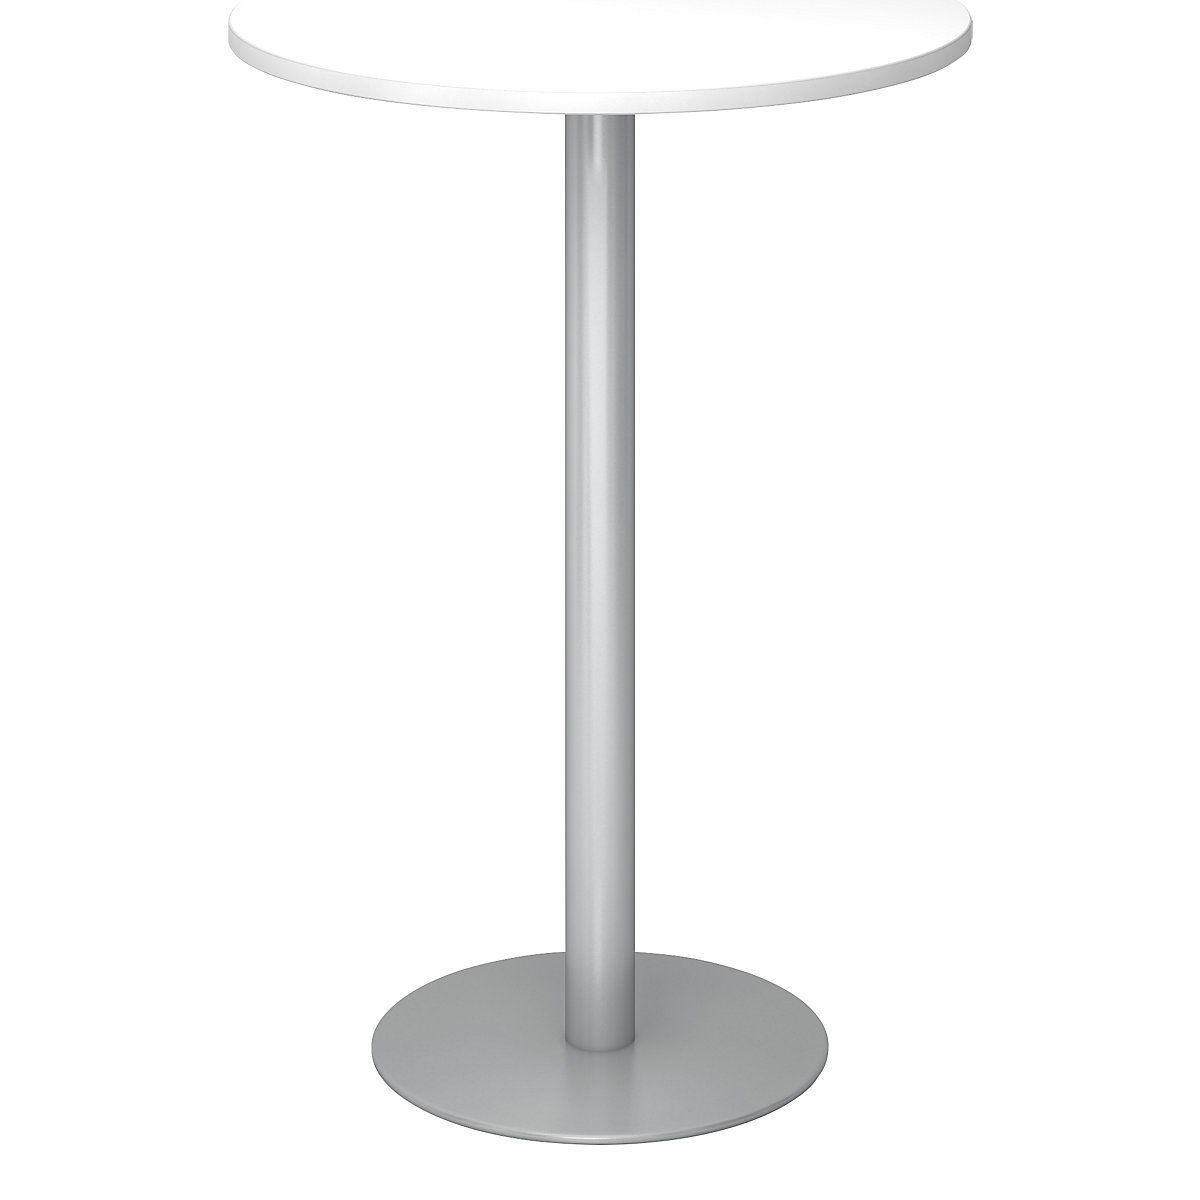 Állóasztal, Ø 800 mm, 1116 mm magas, ezüst váz, fehér asztallap